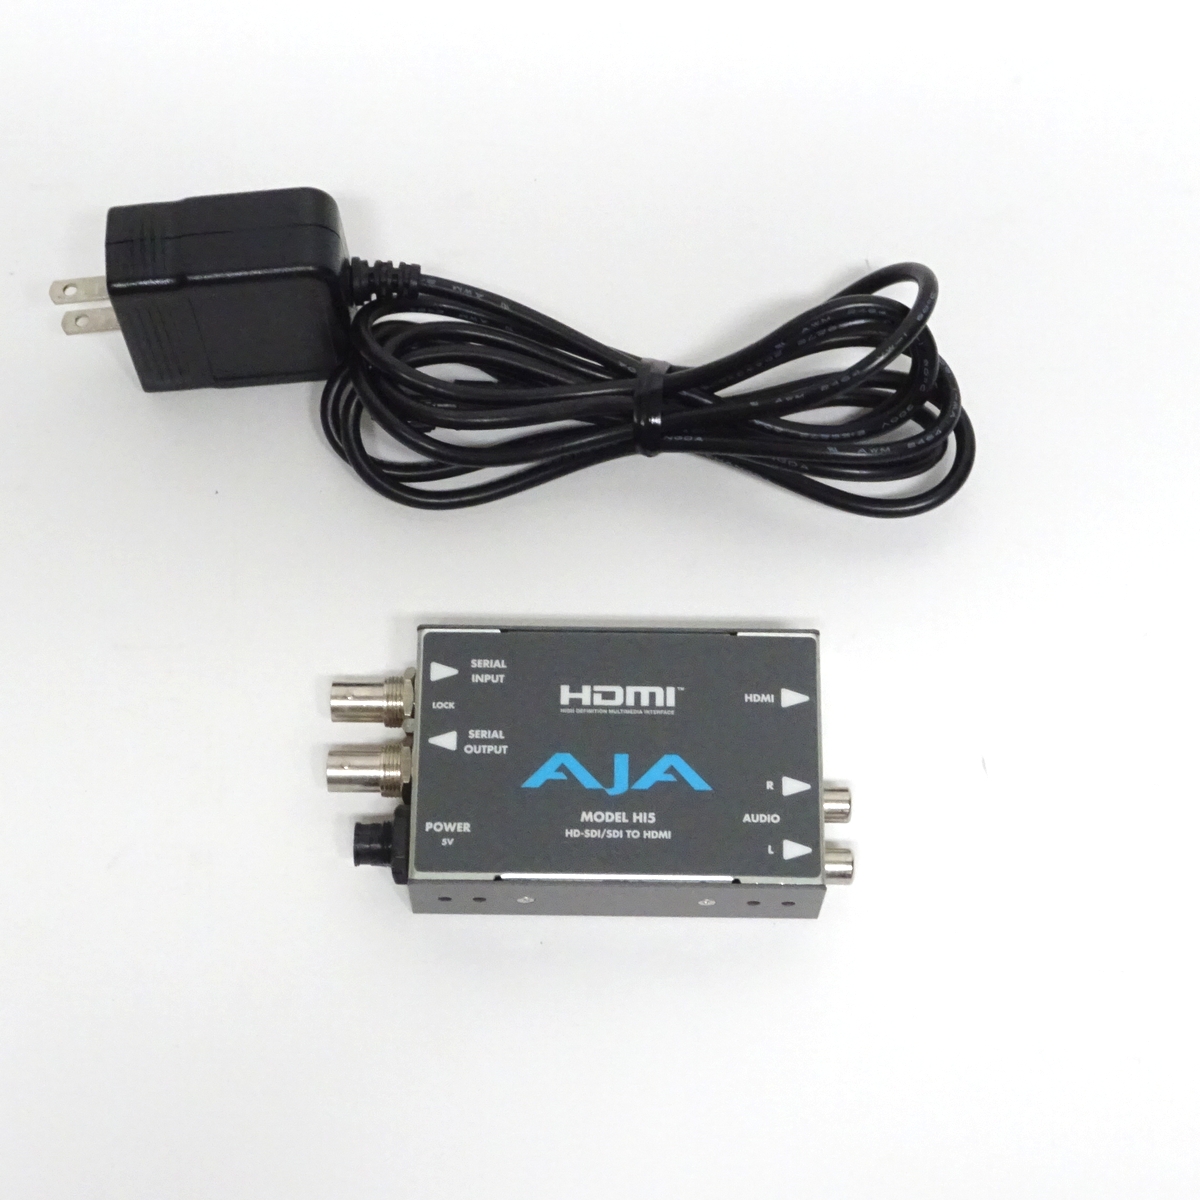 【中古】AJA Hi5 HD/SD to HDMIコンバーター 【愛知発送1】